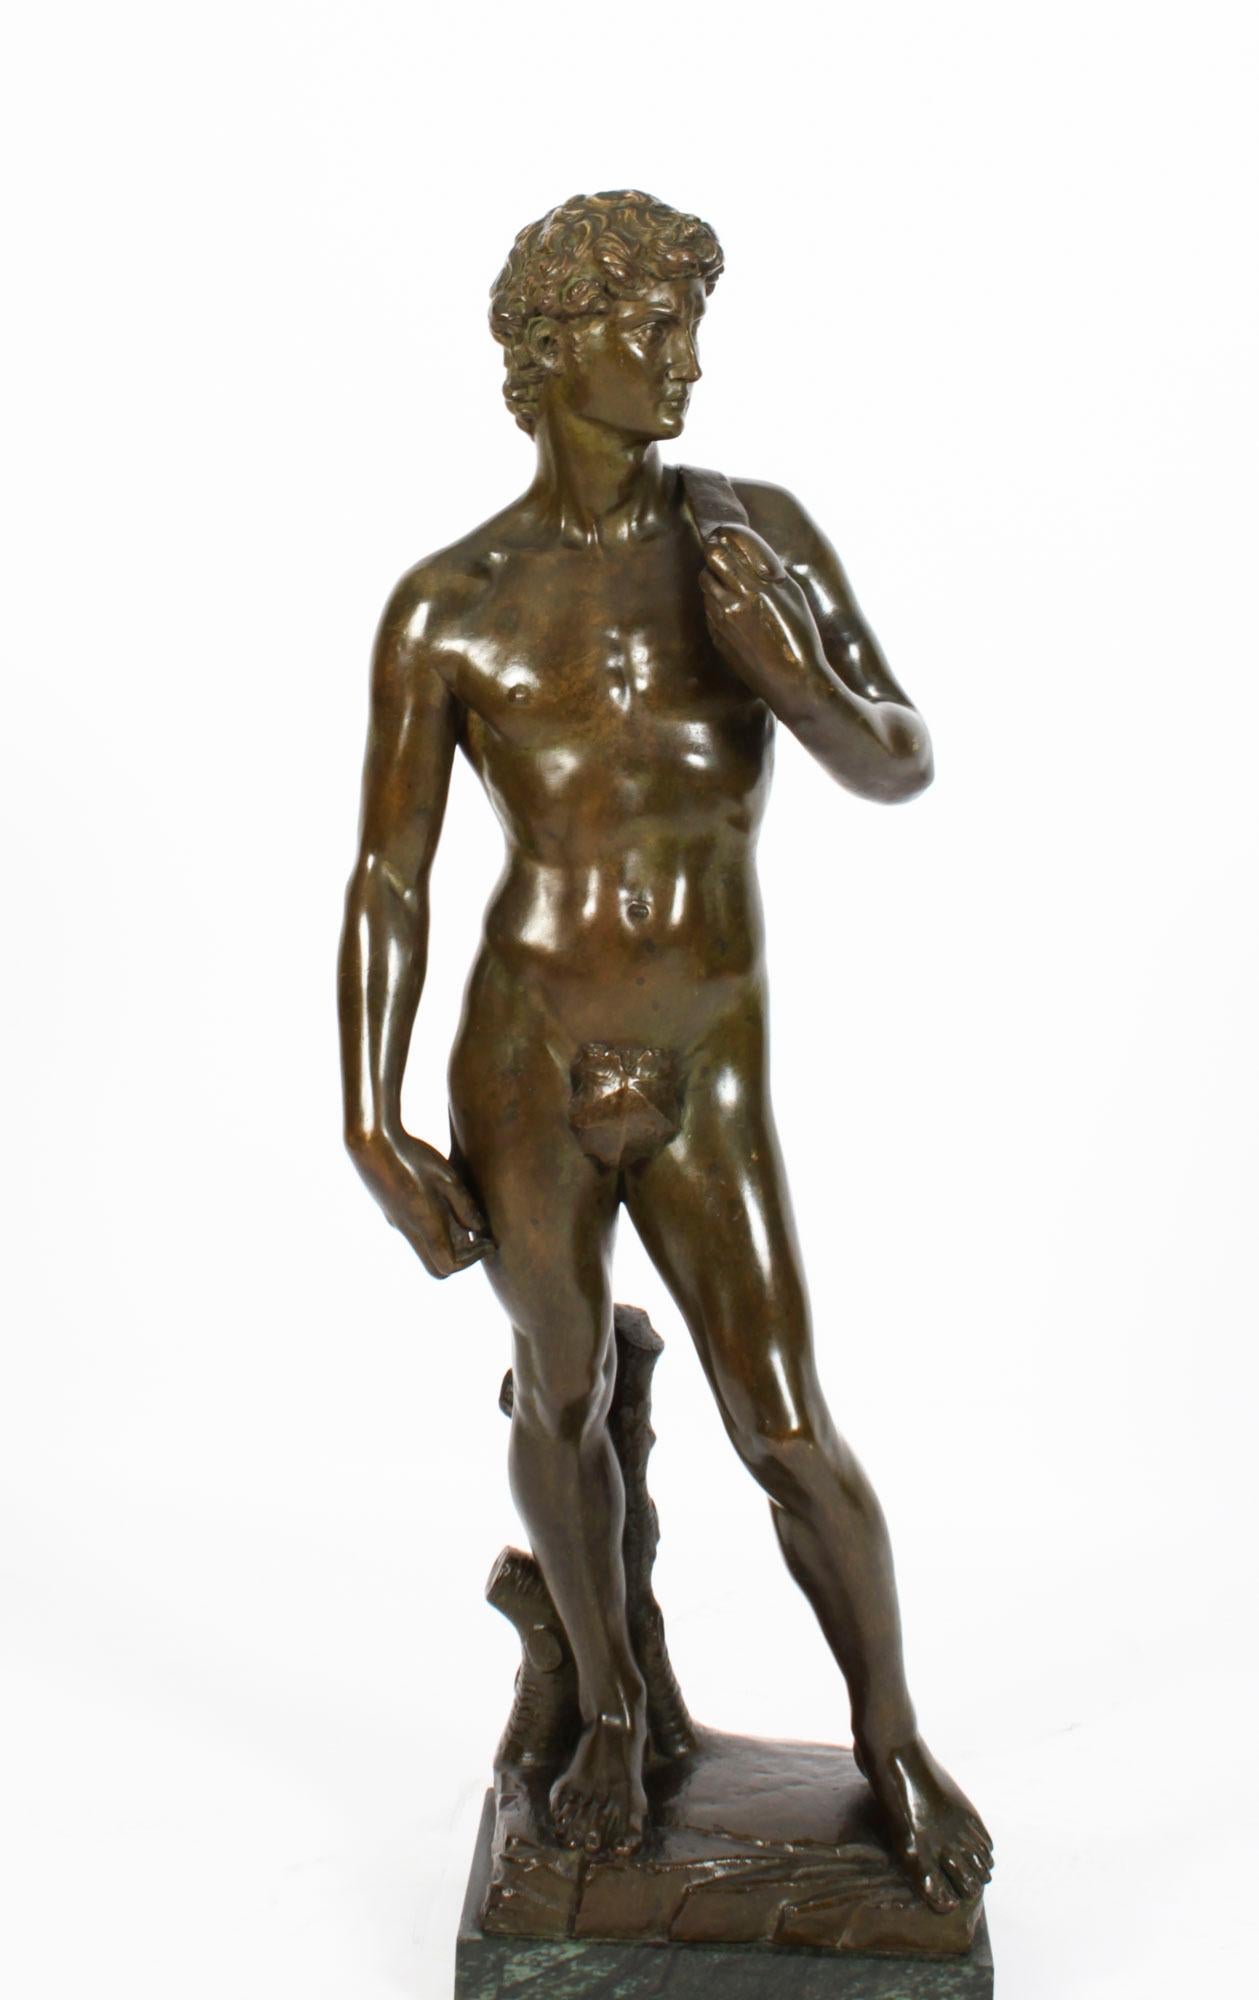 Il s'agit d'une élégante sculpture monumentale en bronze Grand Tour de  Le David de Michelangelo, daté d'environ 1880.

La statue de marbre de 14 pieds représente le héros biblique David, représenté comme un homme nu debout. David semble tendu et